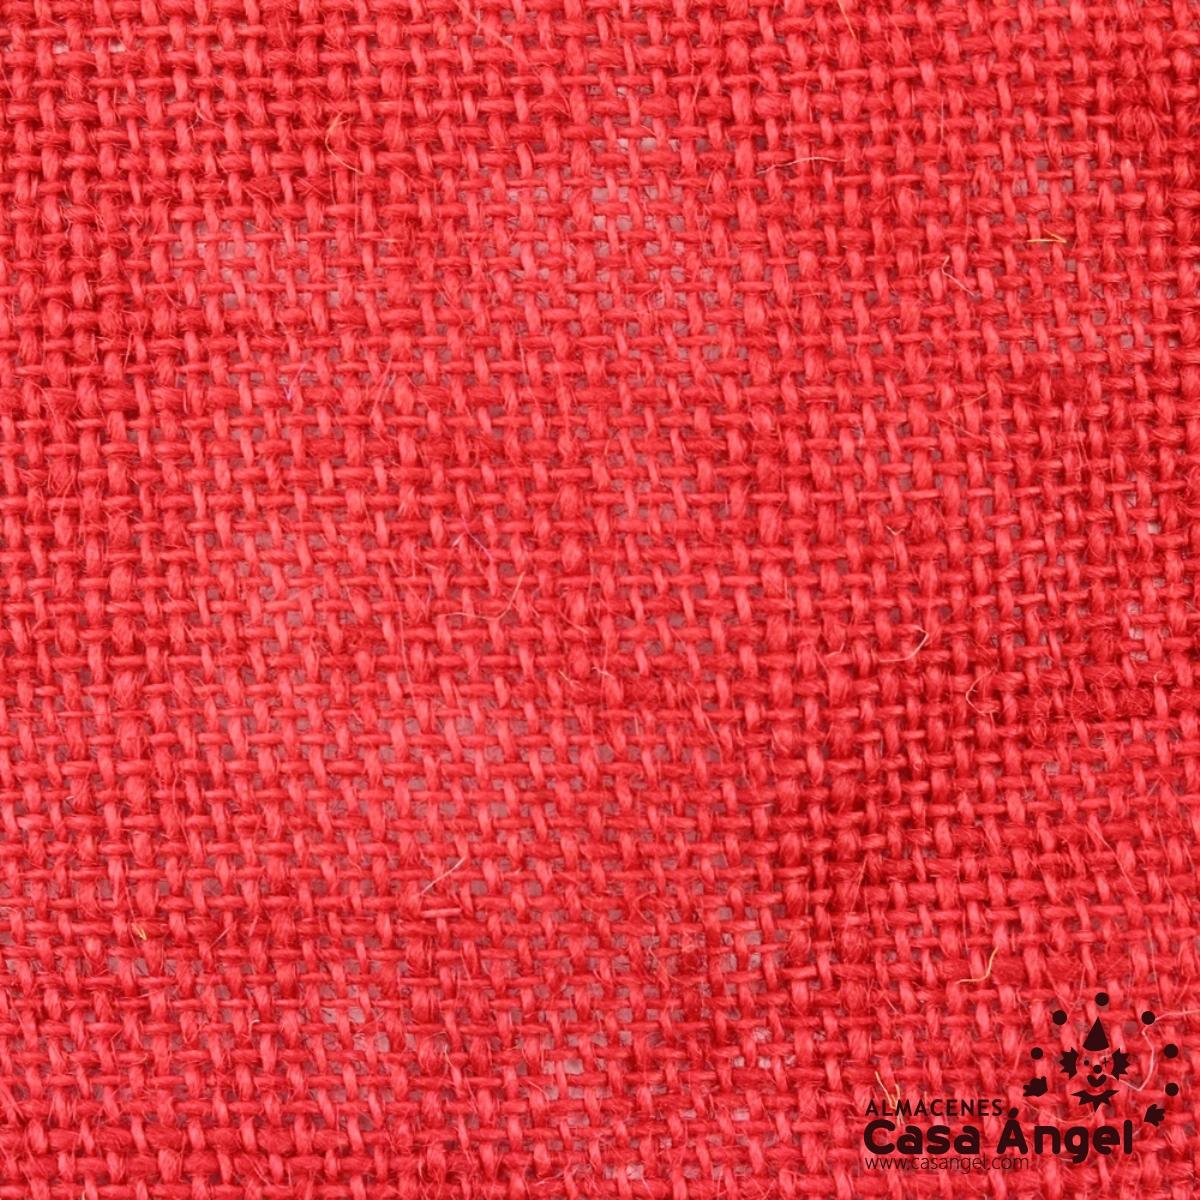 Panerita-roja  Paneras de tela, Tapetes de mesa de arpillera, Bolsas de  arpillera